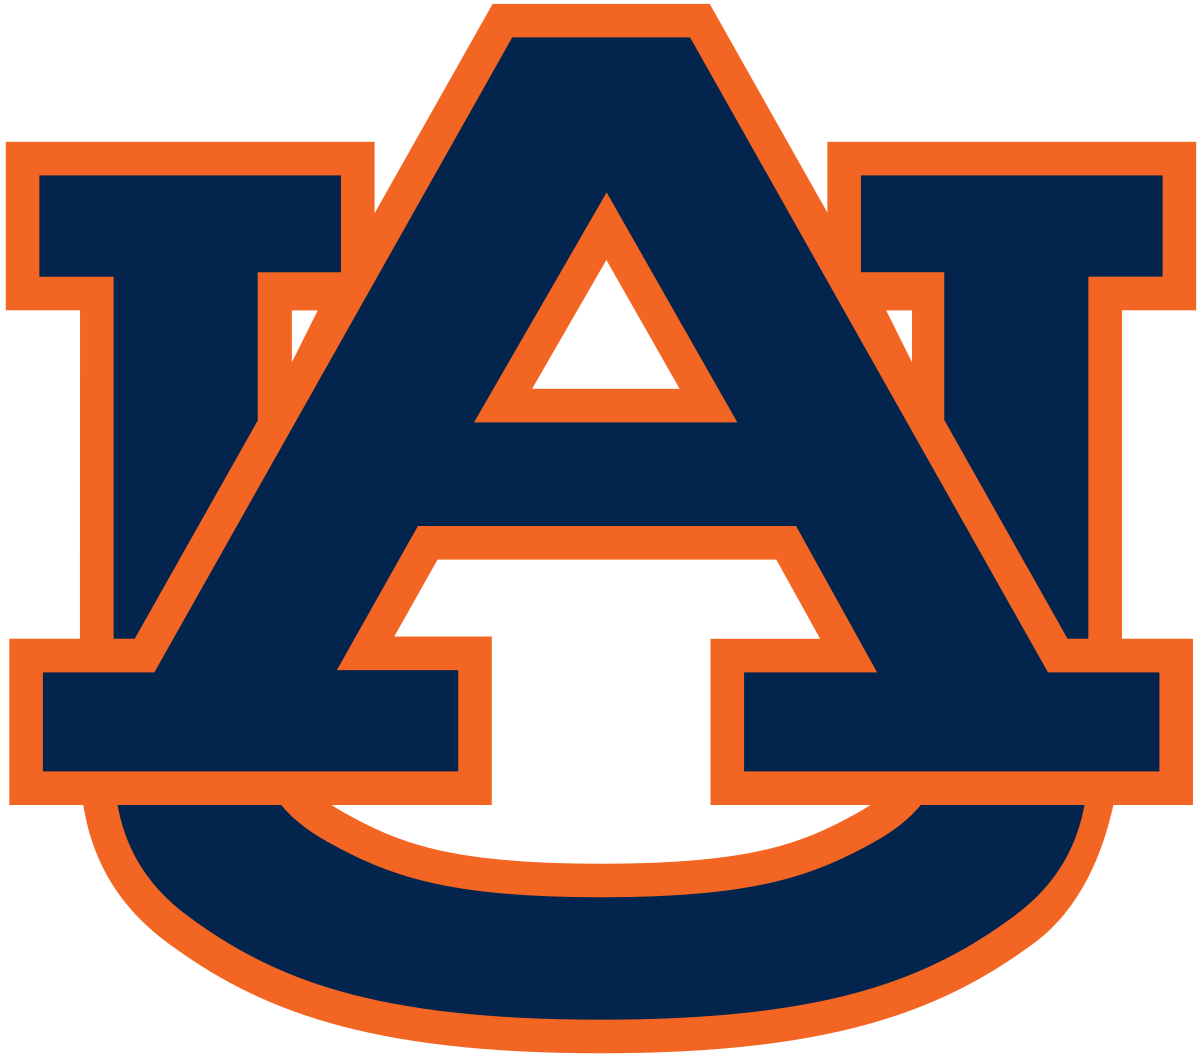 Auburn Tigers - Wikipedia